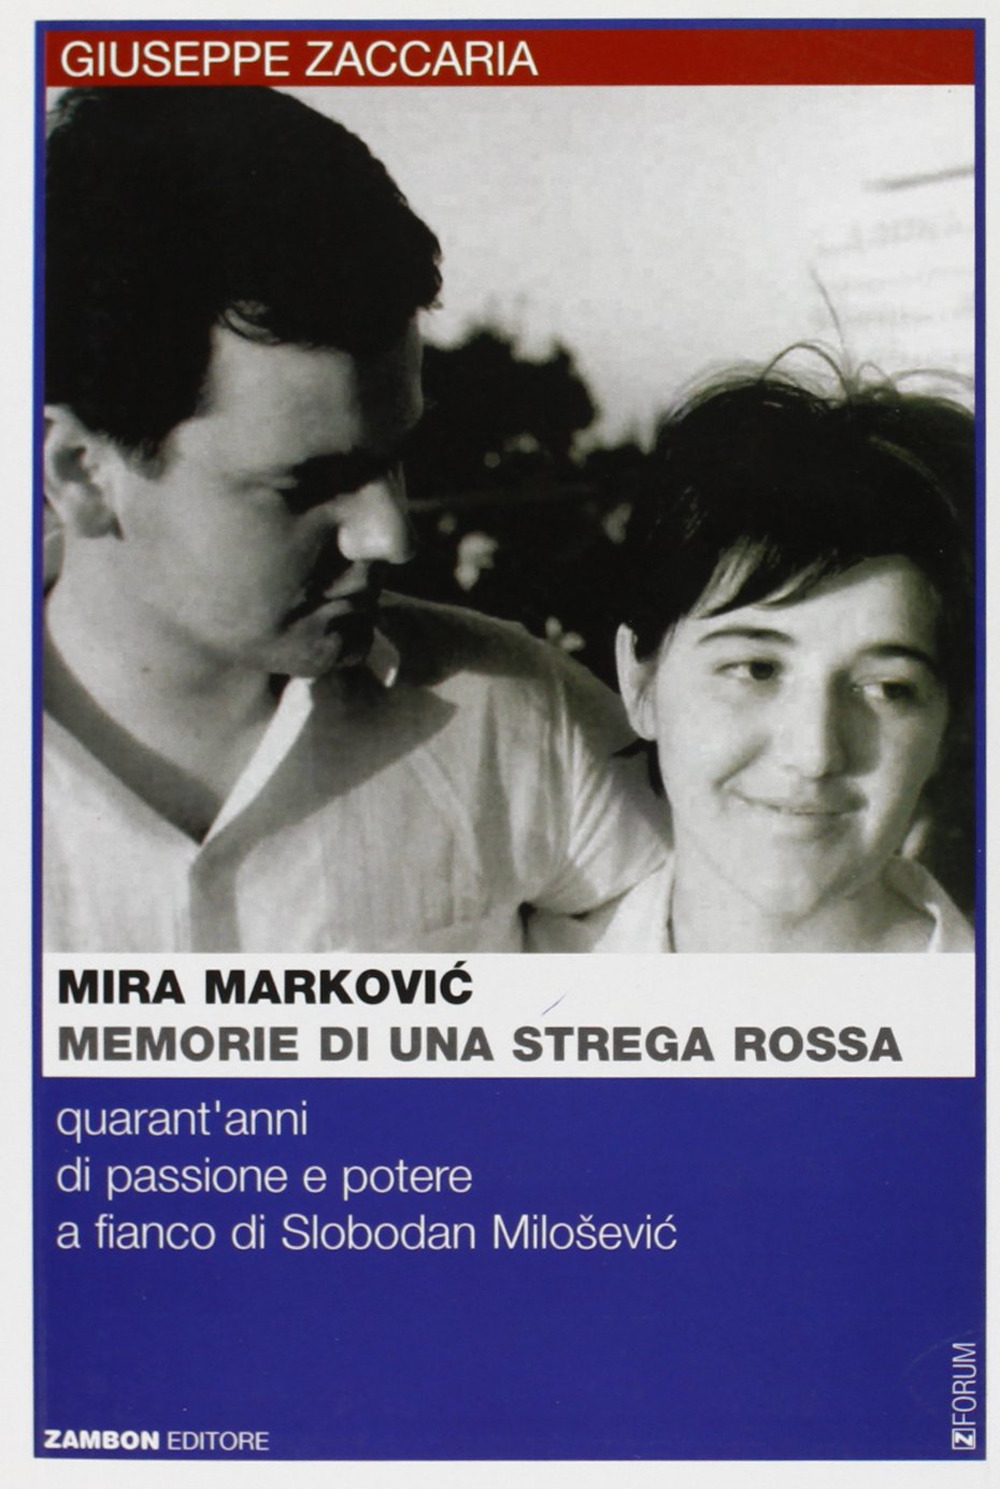 Mira Markovic: memorie di una strega rossa. 40 anni di passione e potere a fianco di Slobodan Milosevic